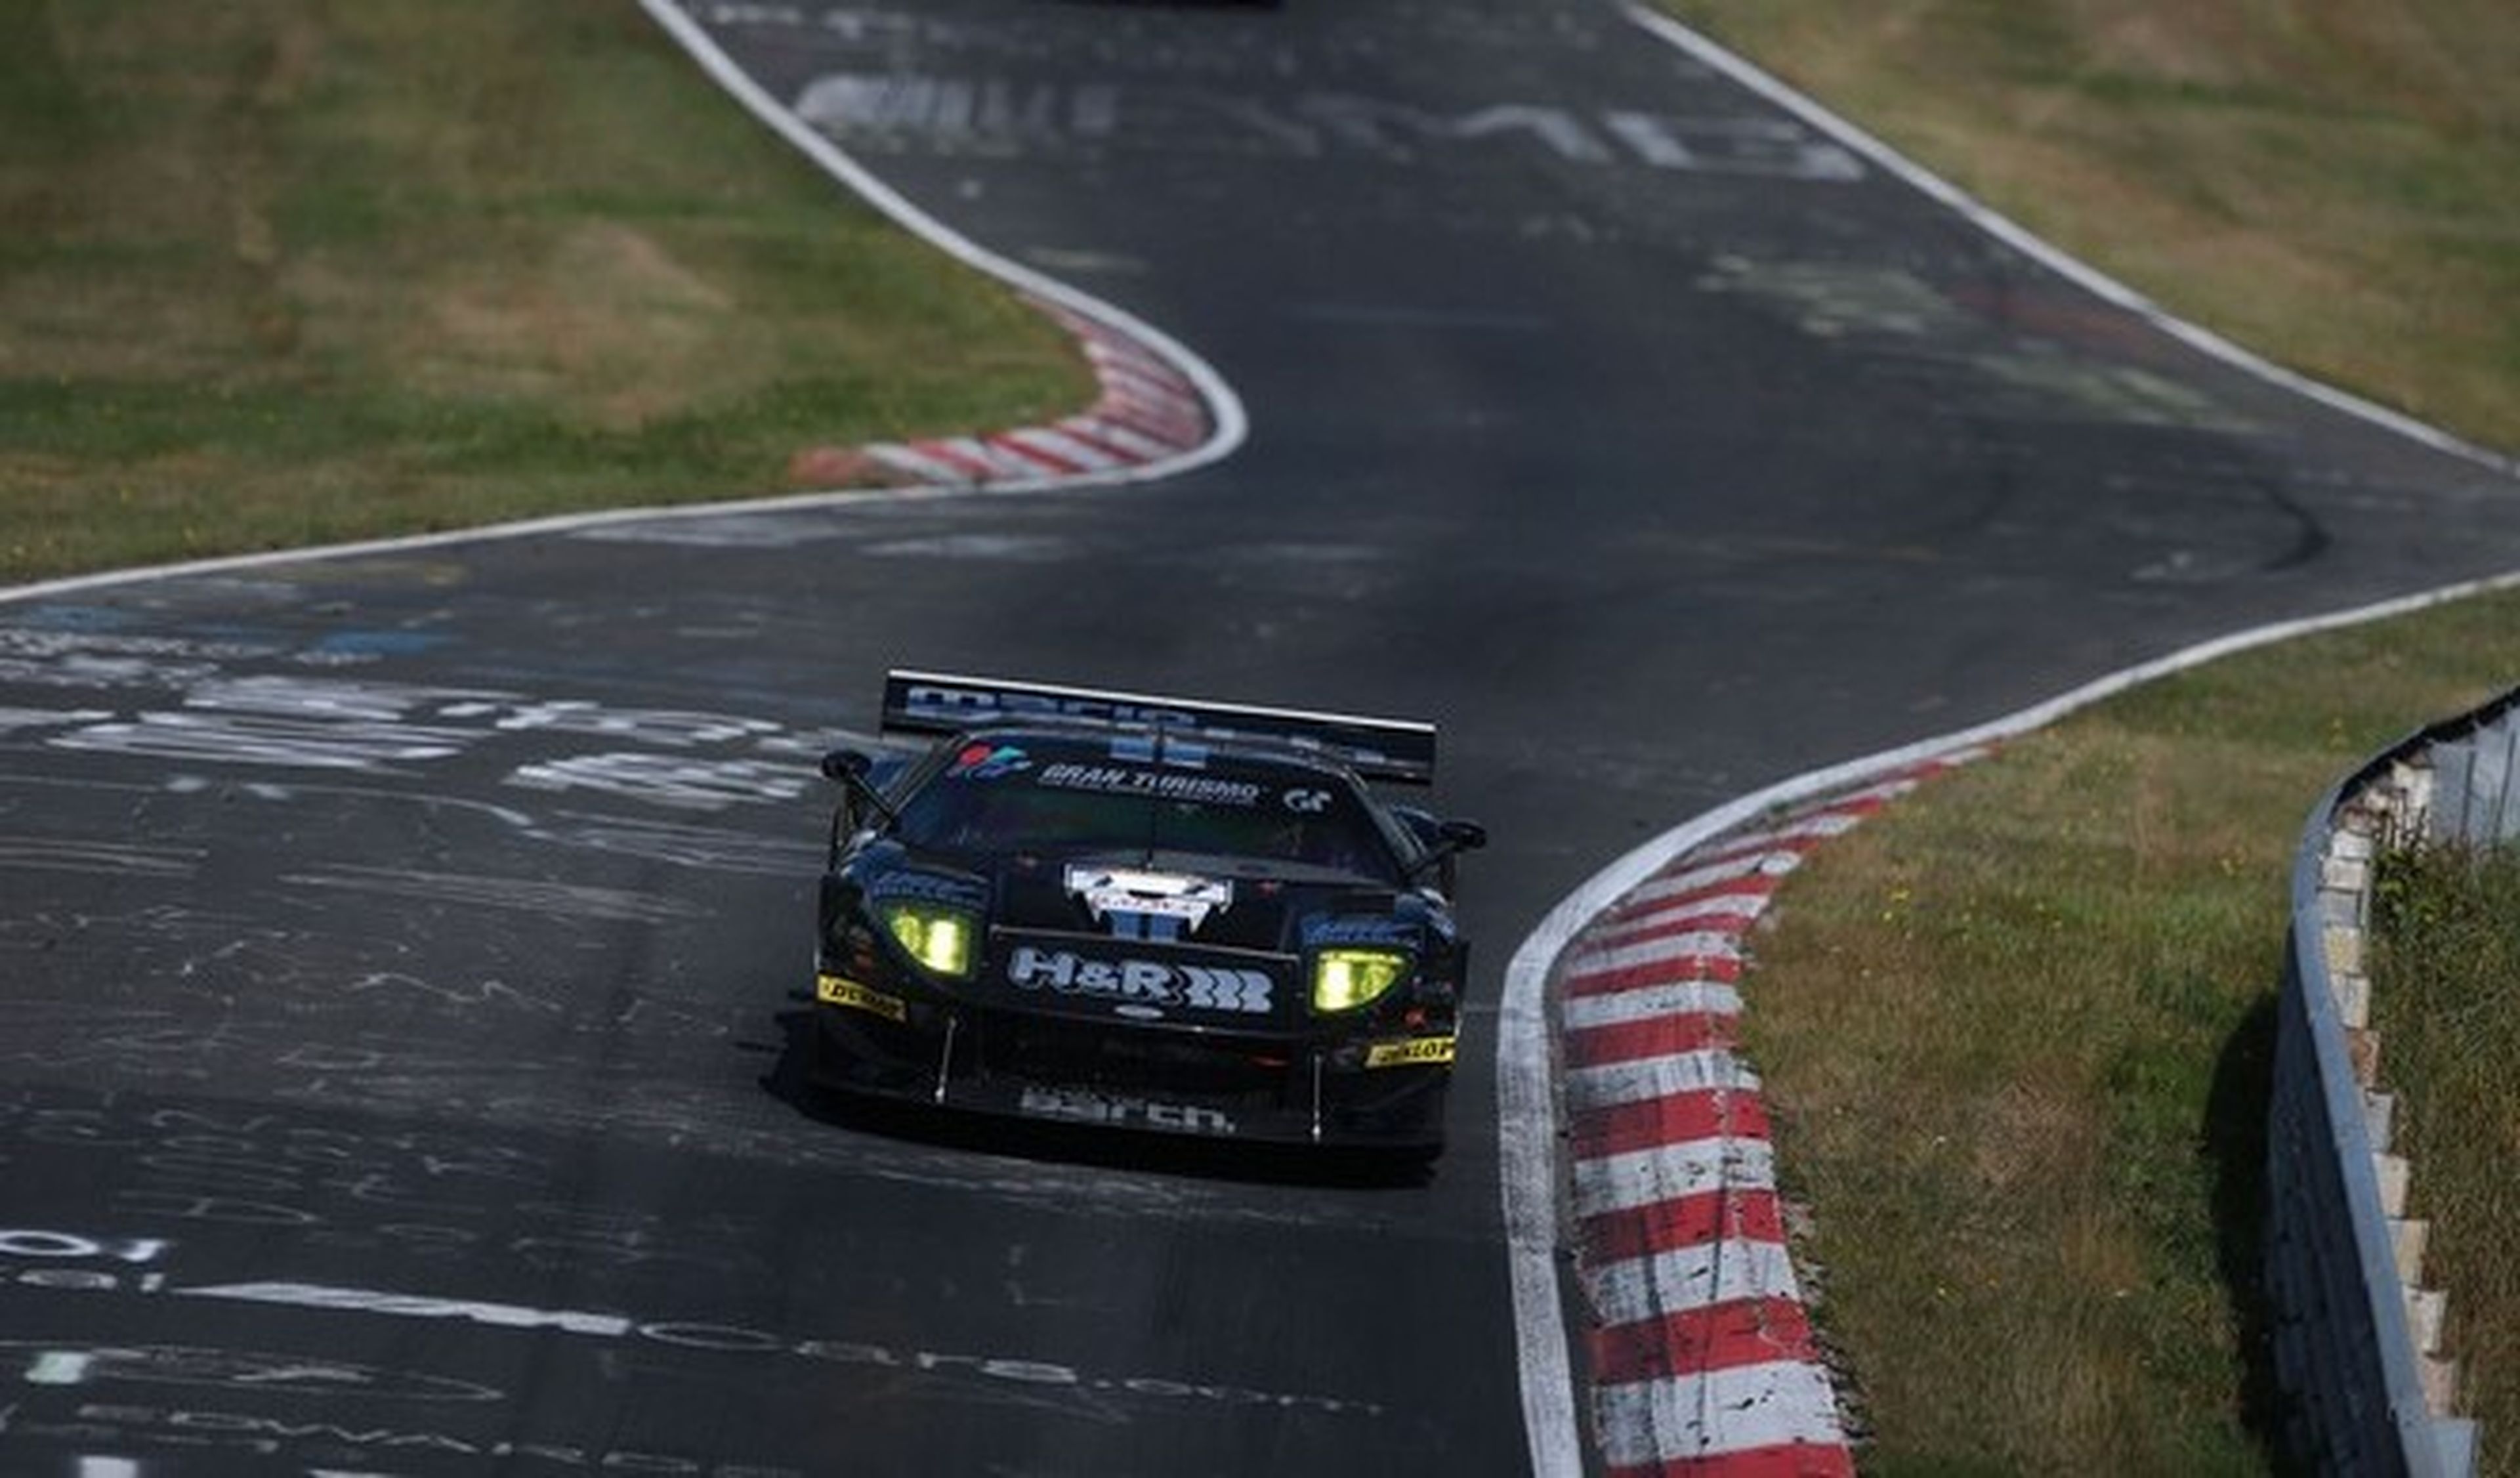 El antiguo Ford GT marca un récord en Nürburgring